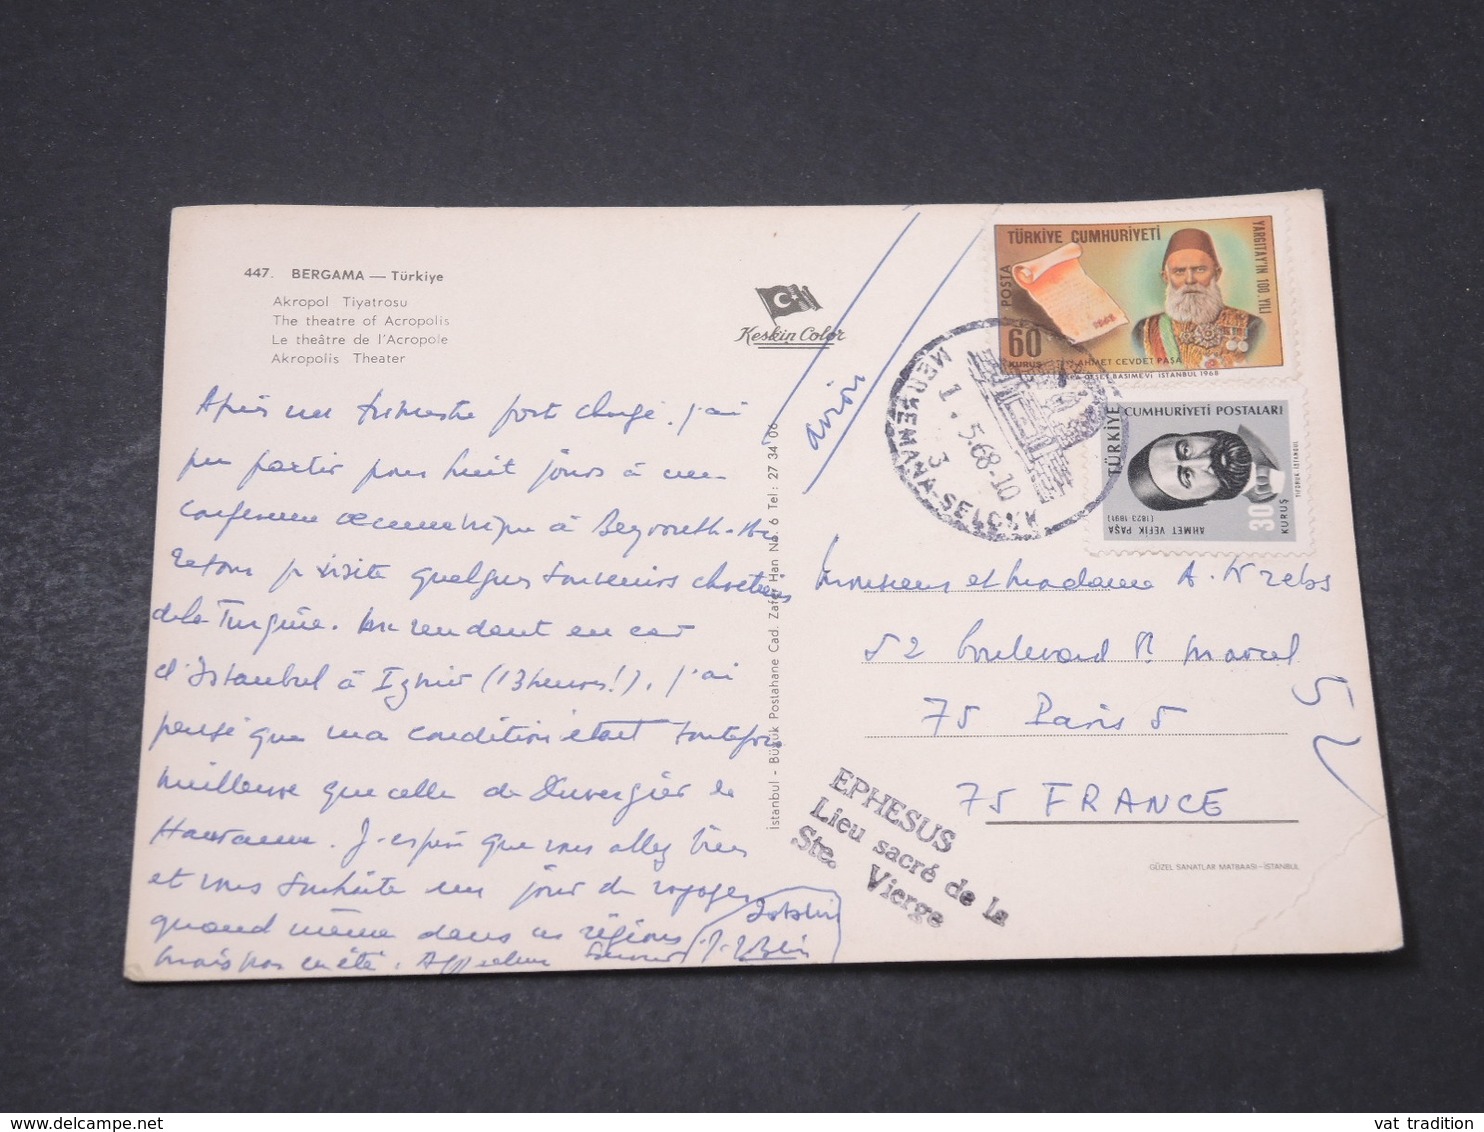 TURQUIE - Affranchissement De Bergama Sur Carte Postale Pour La France En 1968 - L 16701 - Briefe U. Dokumente